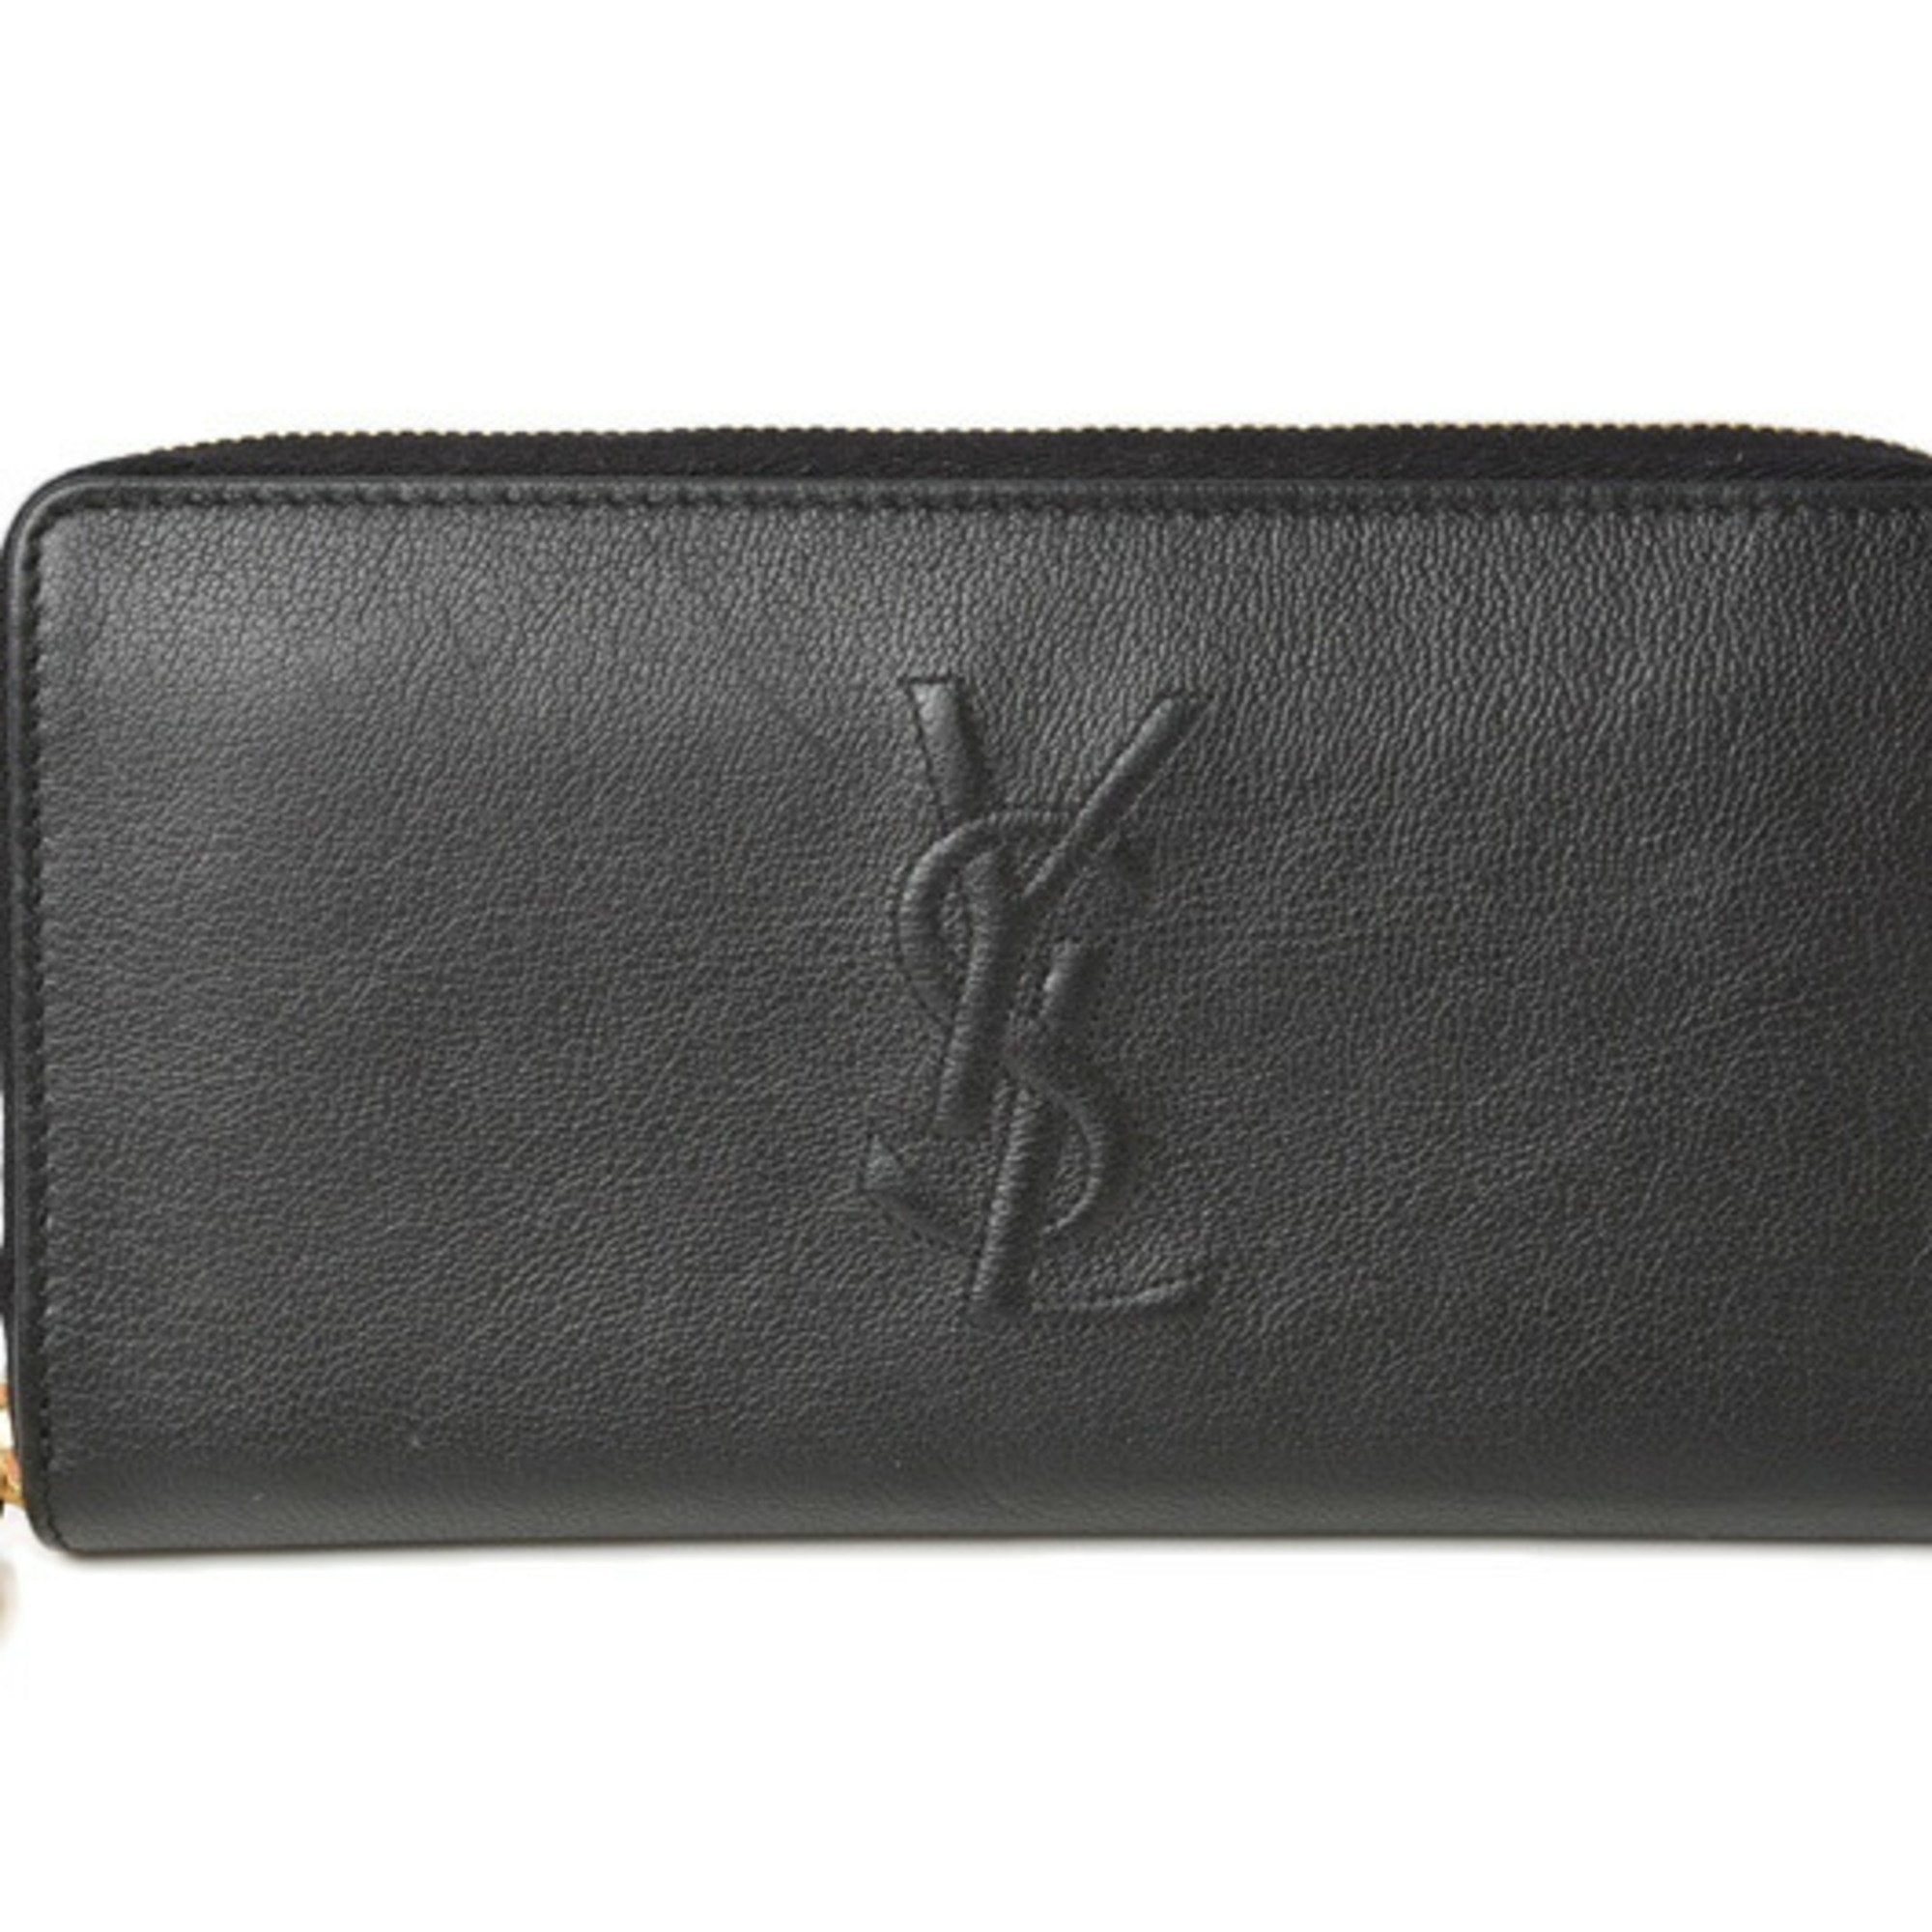 Saint Laurent Black Belle De Jour Leather Zip Around Wallet 568995